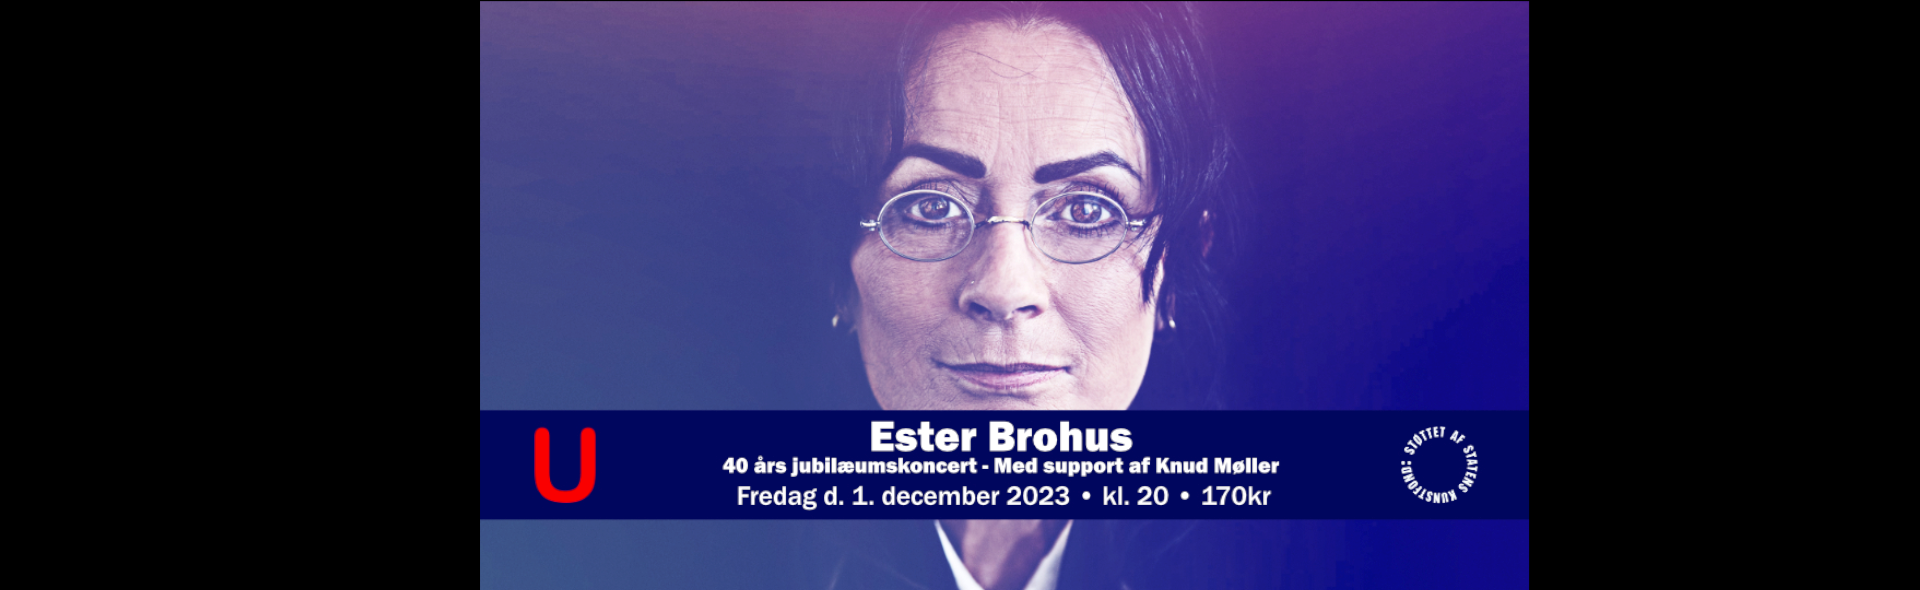 Ester Brohus_slide_poster